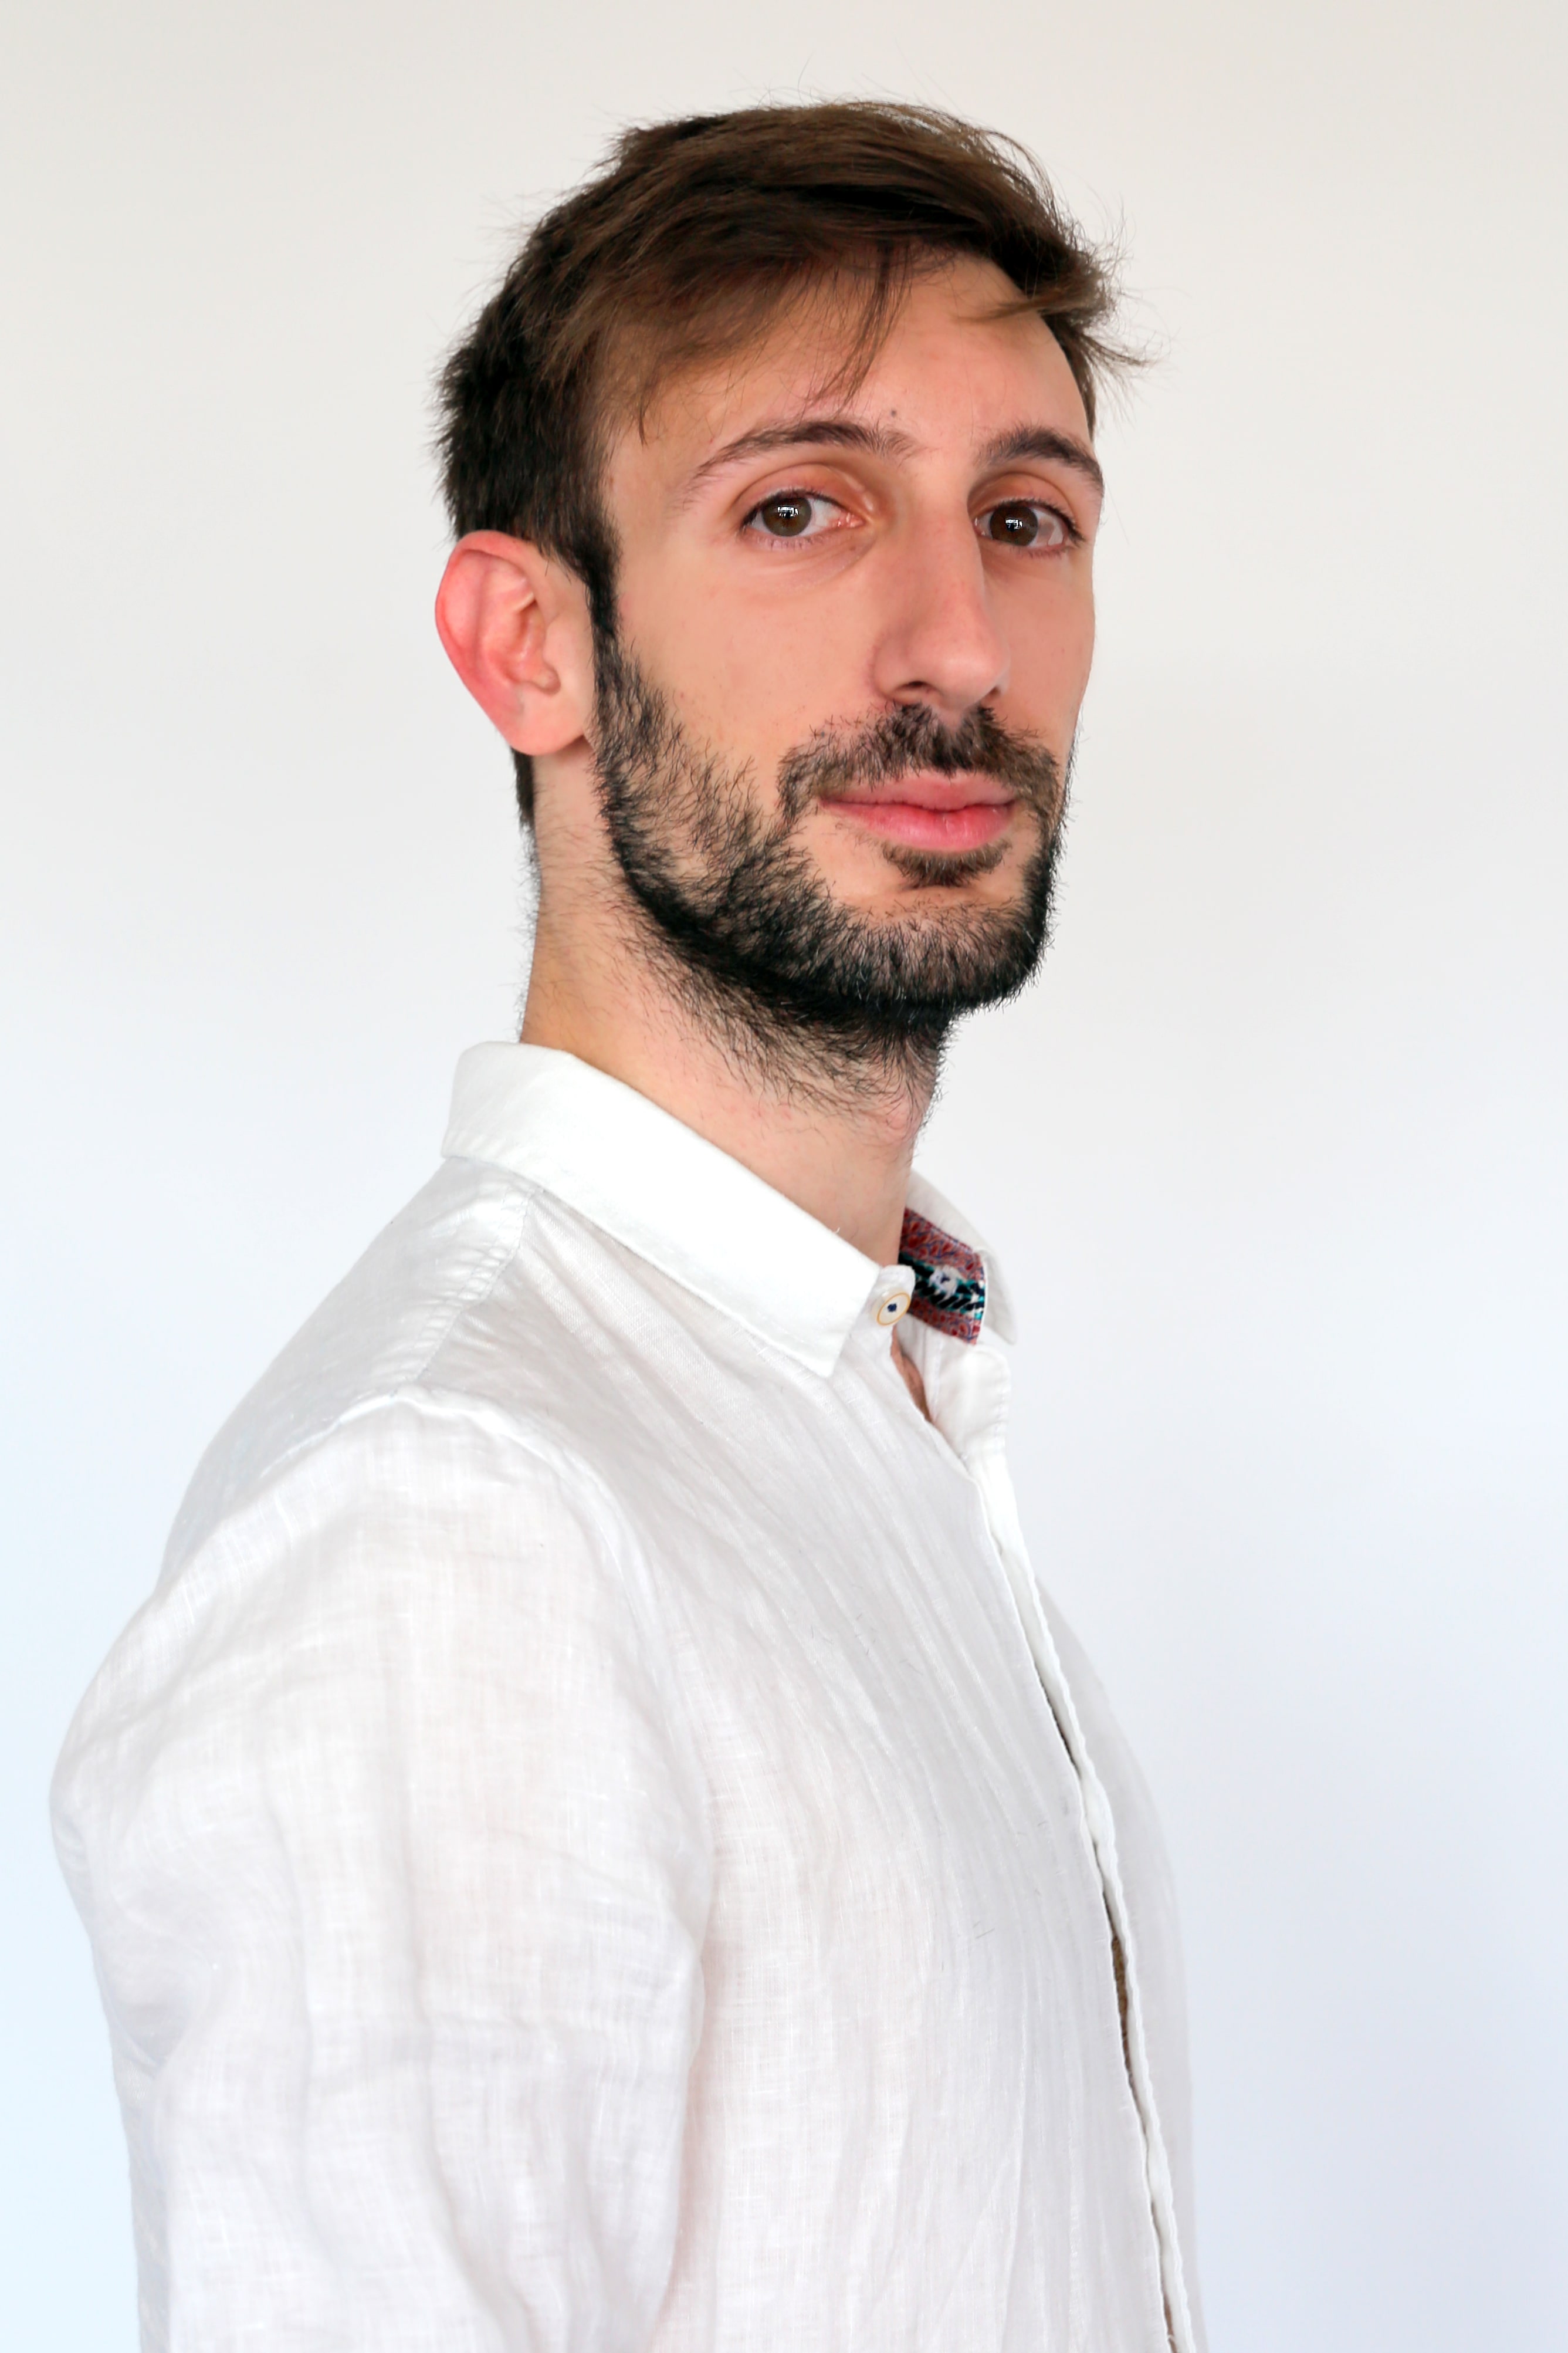 Laurent Busca - Enseignant-chercheur Montpellier Management